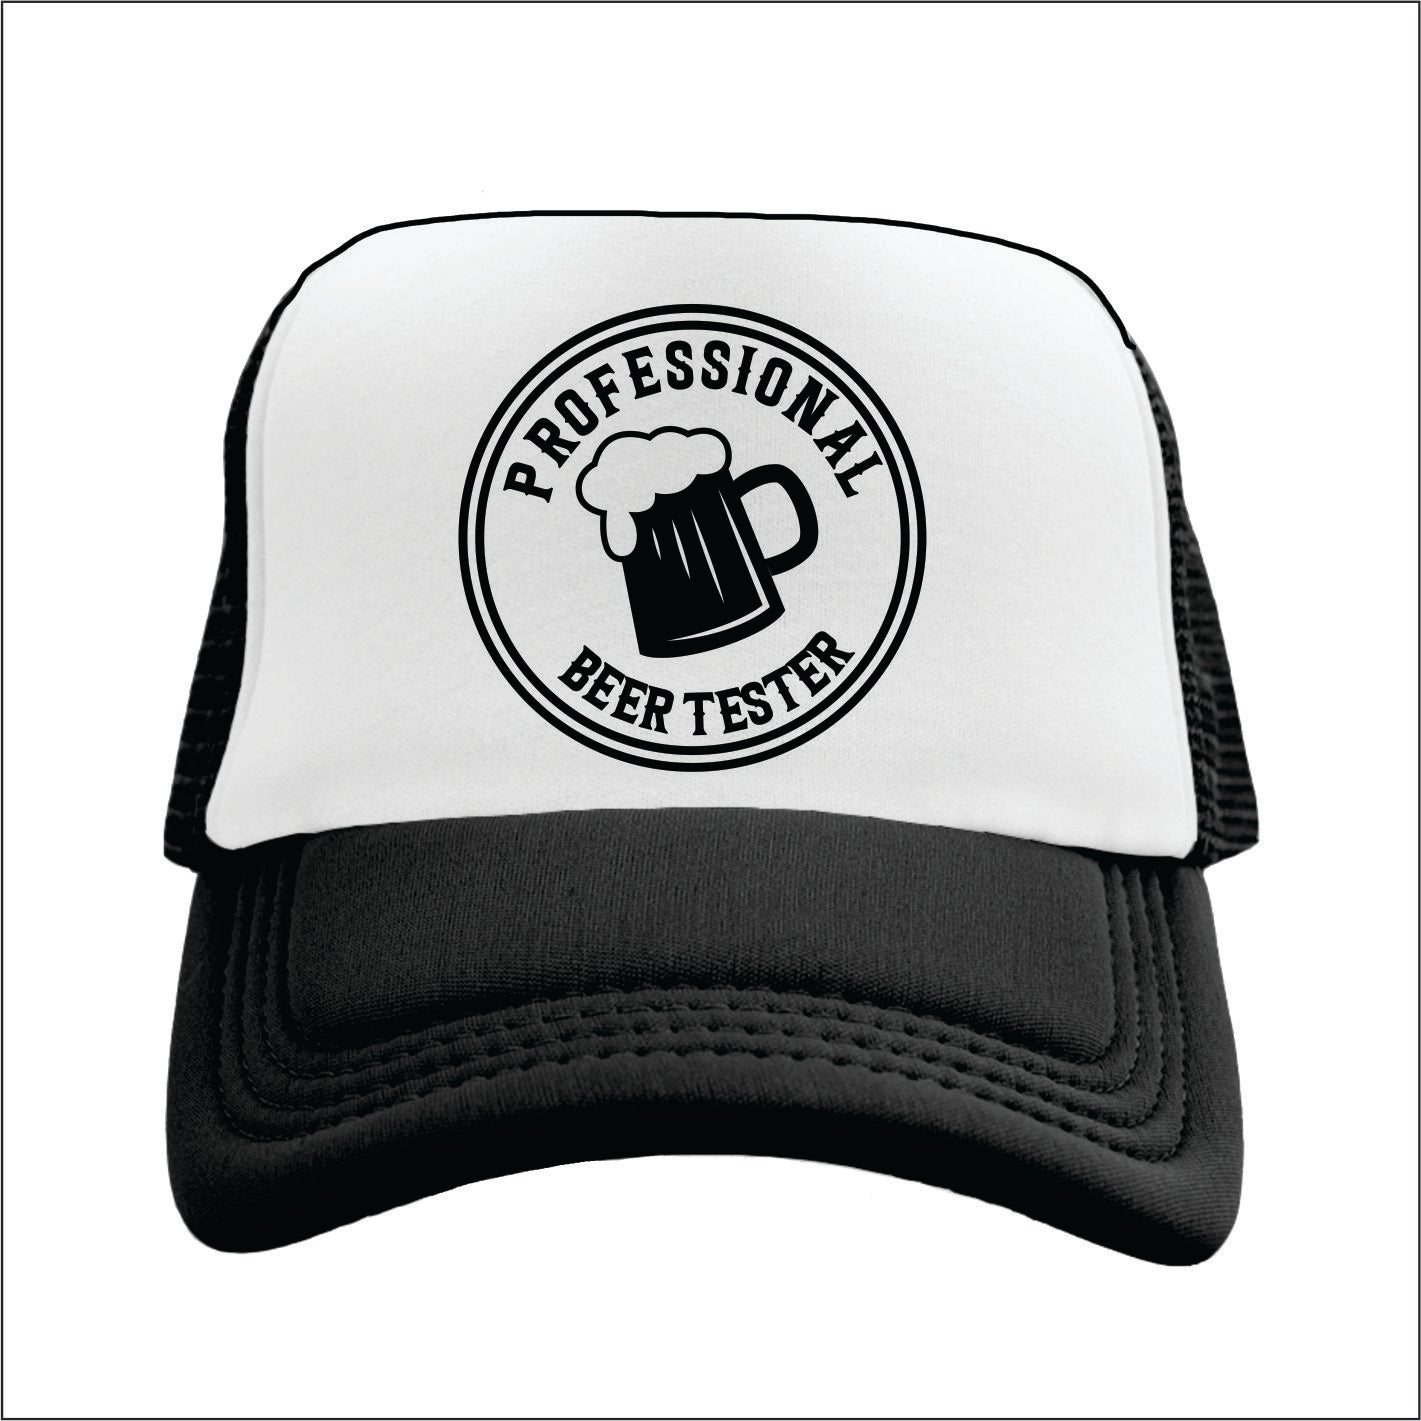 PROFESSIONAL BEER TESTER Trucker Hat